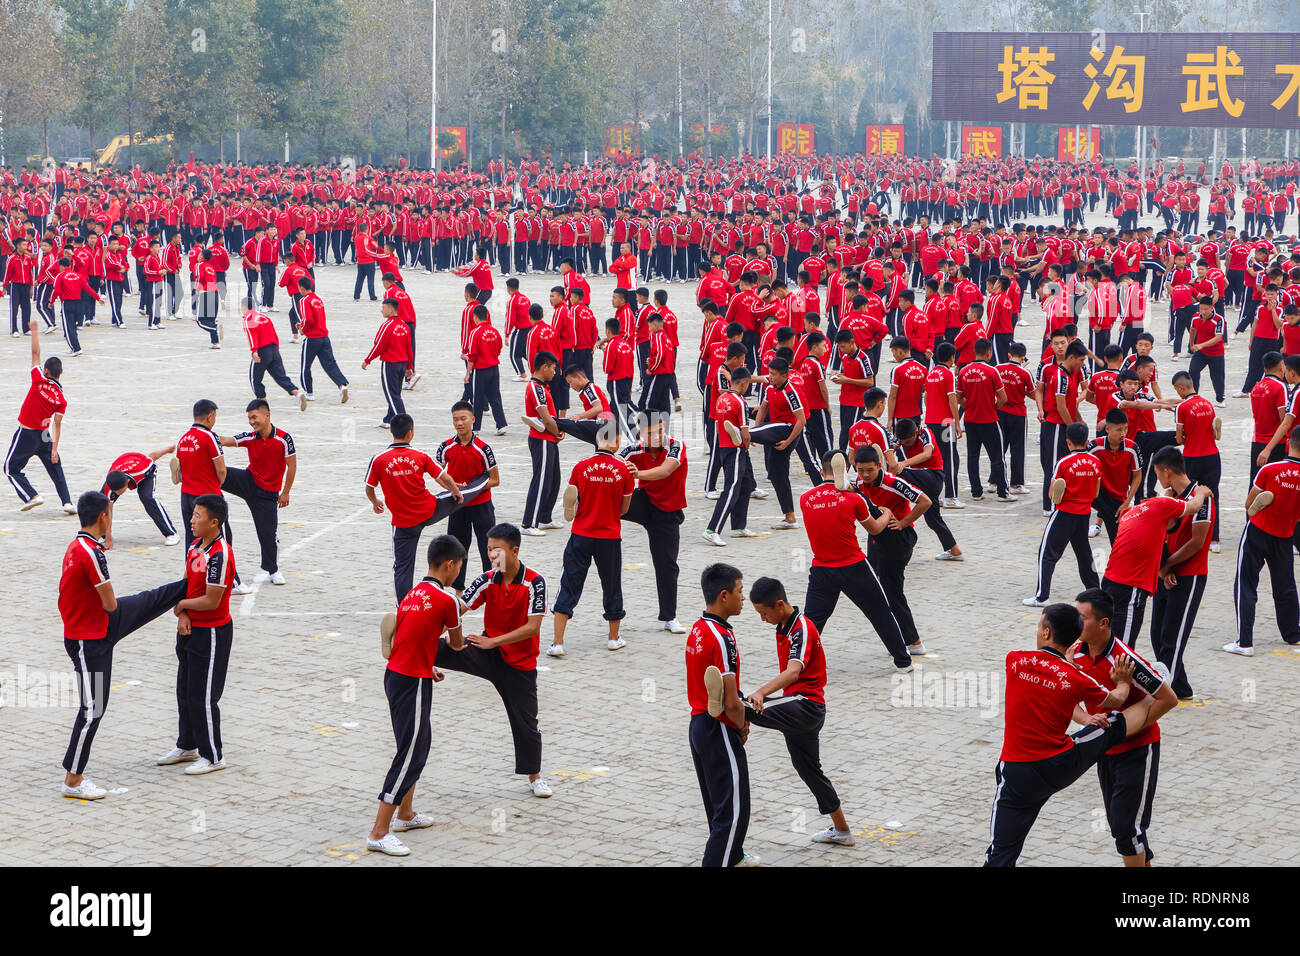 Dengfeng, China - Oktober 16, 2018: Schüler der Martial Arts School warm up vor dem Training. Shaolin Tempel. Stockfoto